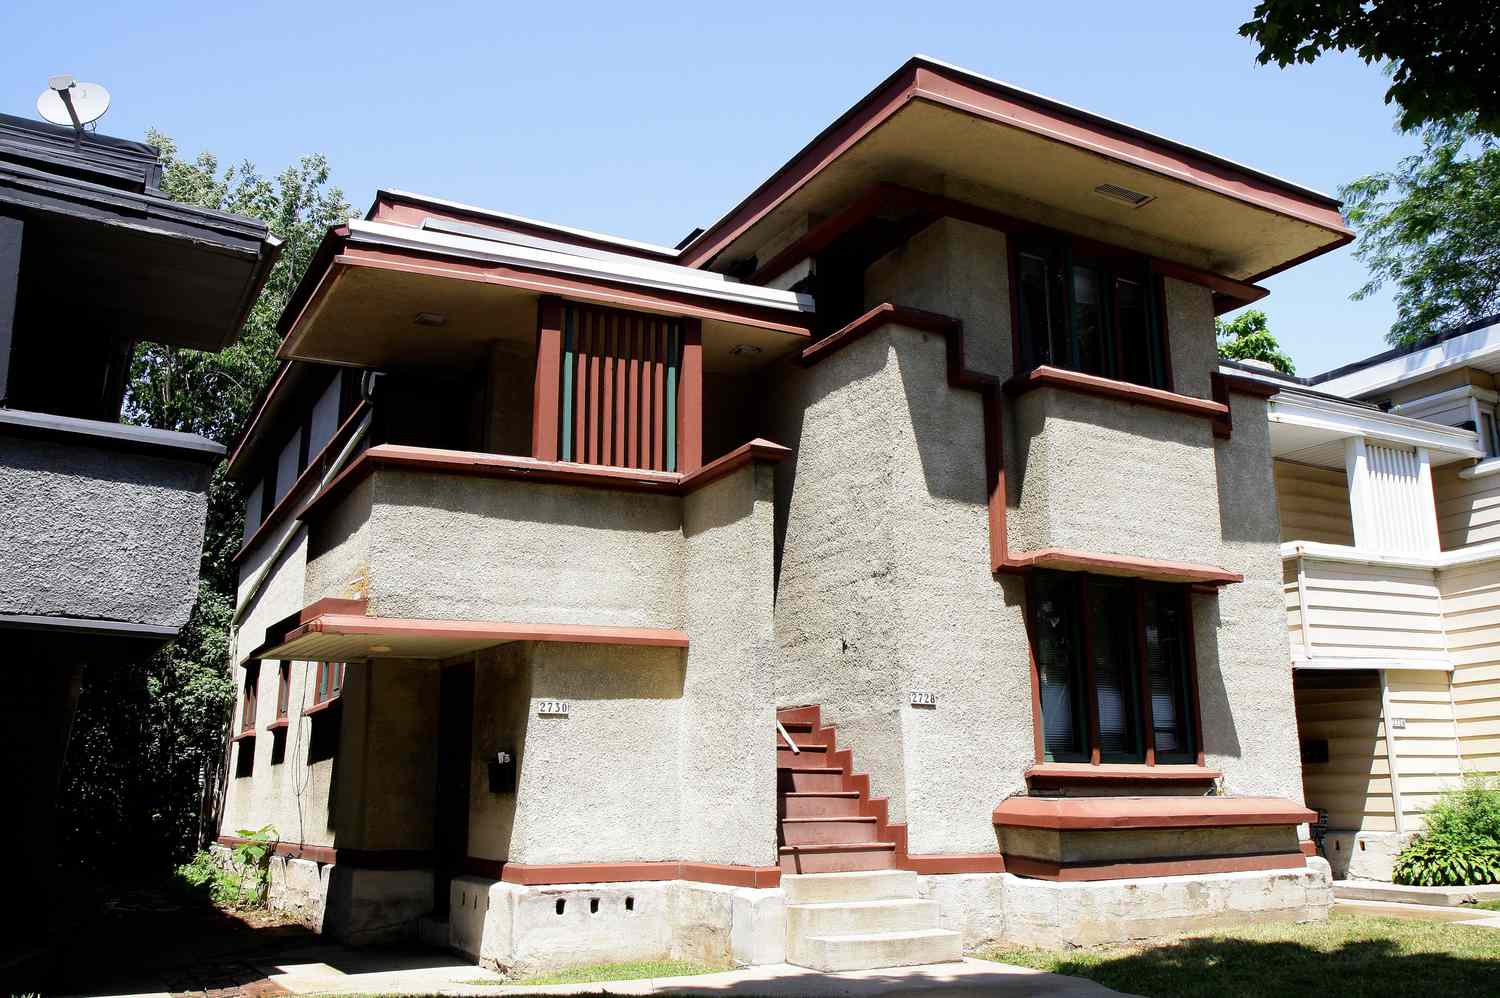 Apartamento dúplex diseñado por Frank Lloyd Wright, una casa construida por el sistema americano en Milwaukee, Wisconsin